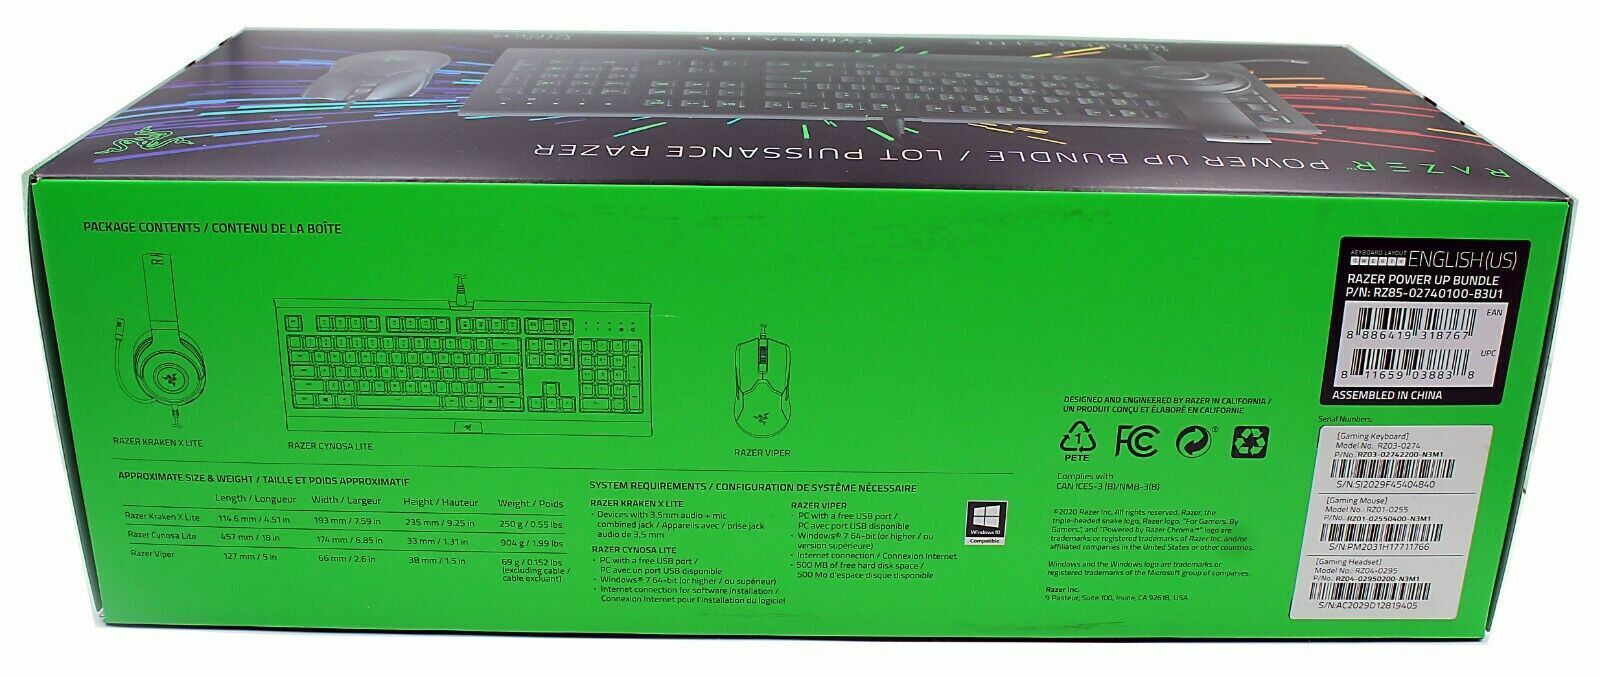 Razer RZ85-02740100-B3U1 Power Up Gaming Bundle Gaming Keayboard, Headset & Mice